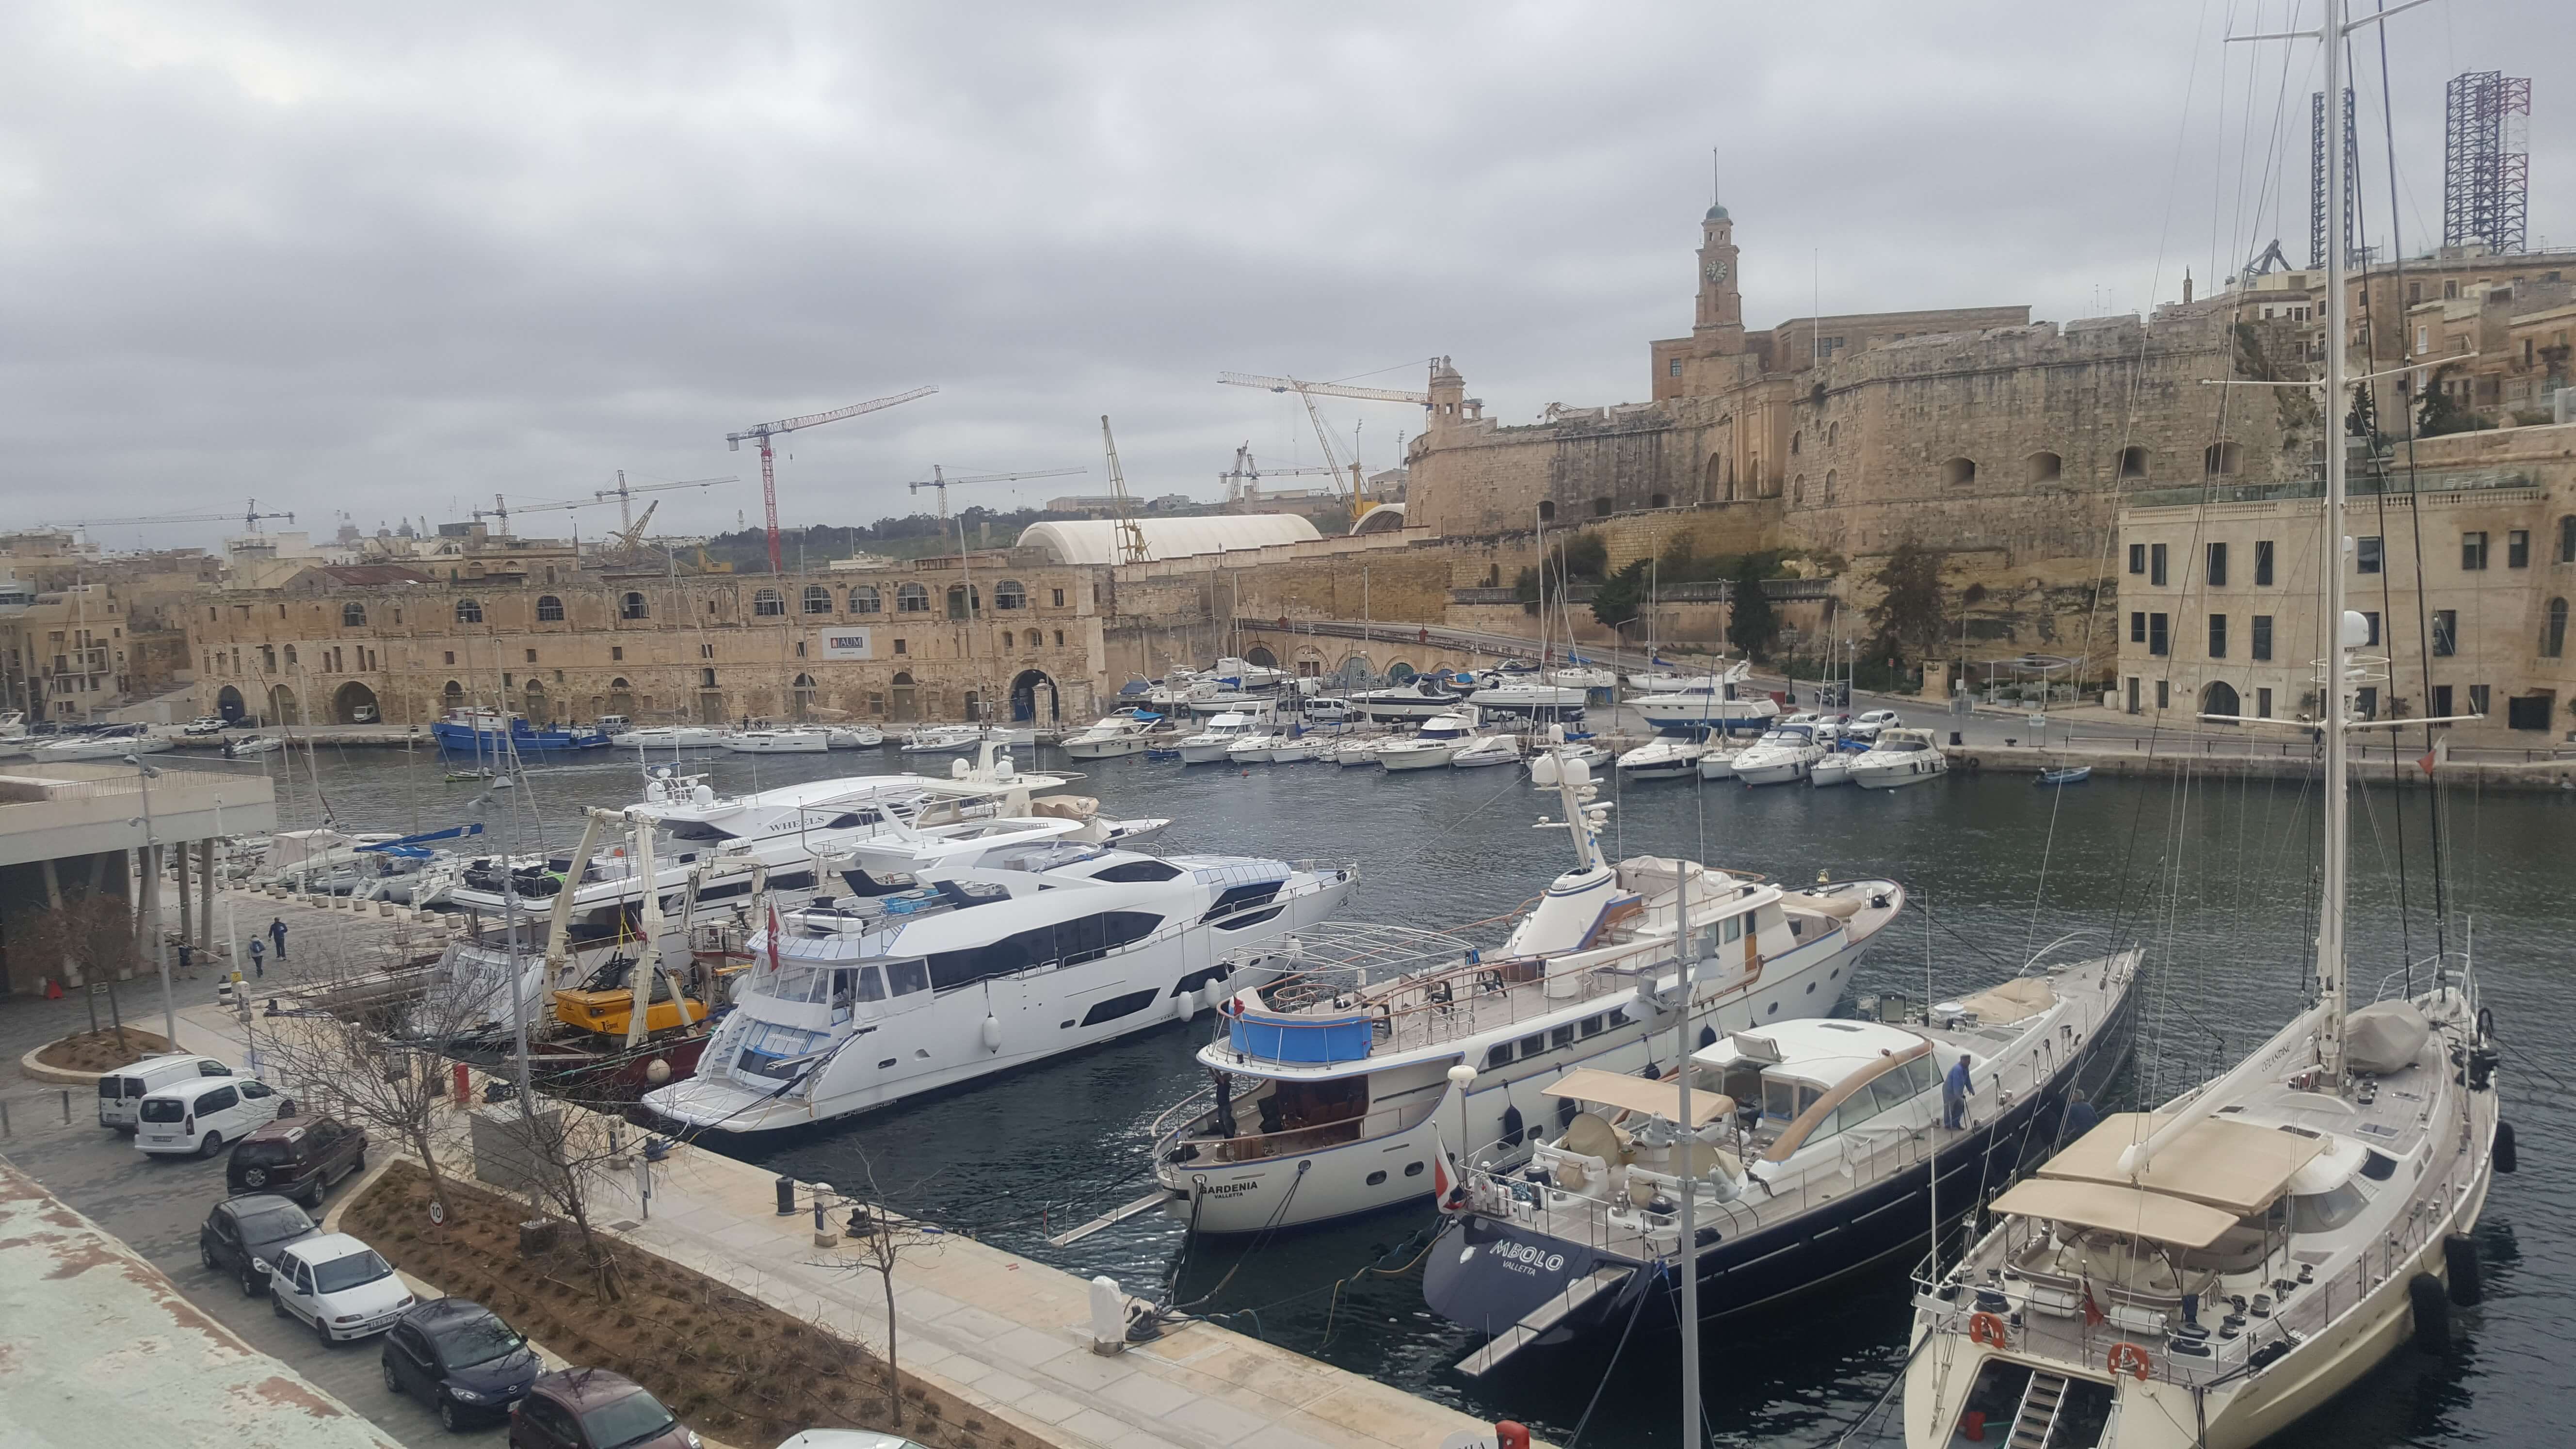 Θεσσαλονίκη: Το μεγάλο στοίχημα του τουρισμού – Ο στόχος μετά το άνοιγμα στην αγορά της Μάλτας [pics]